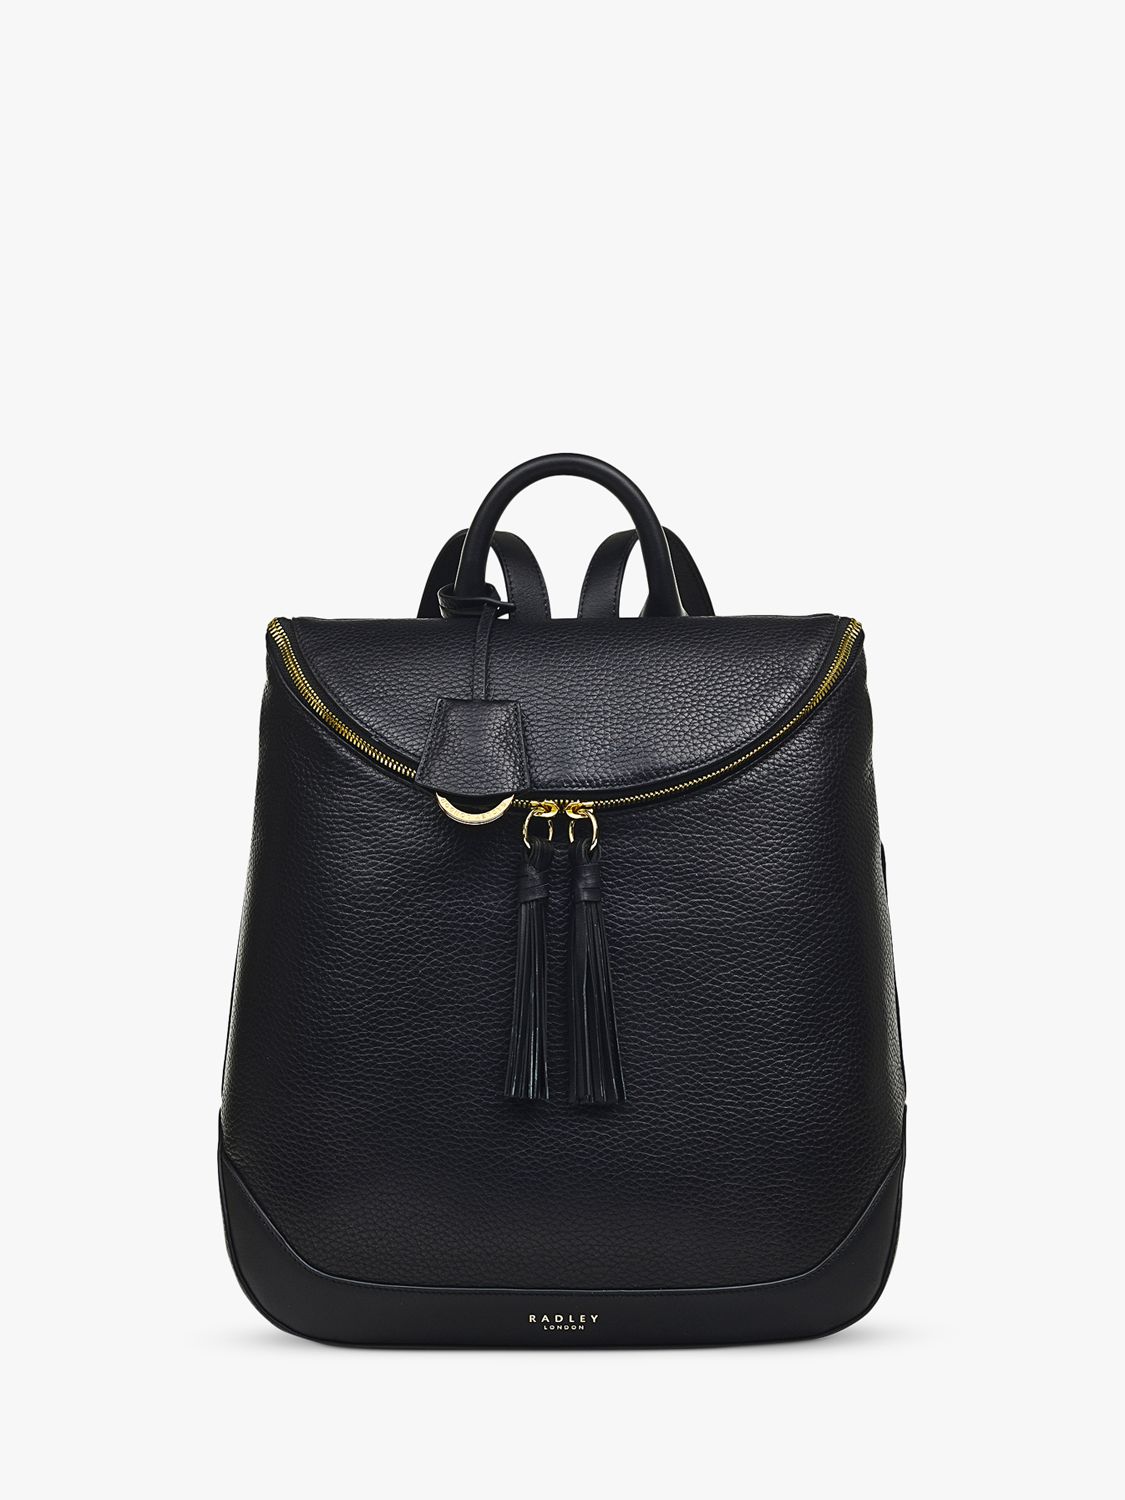 Radley Milligan Street Medium Zip Backpack, Black at John Lewis & Partners